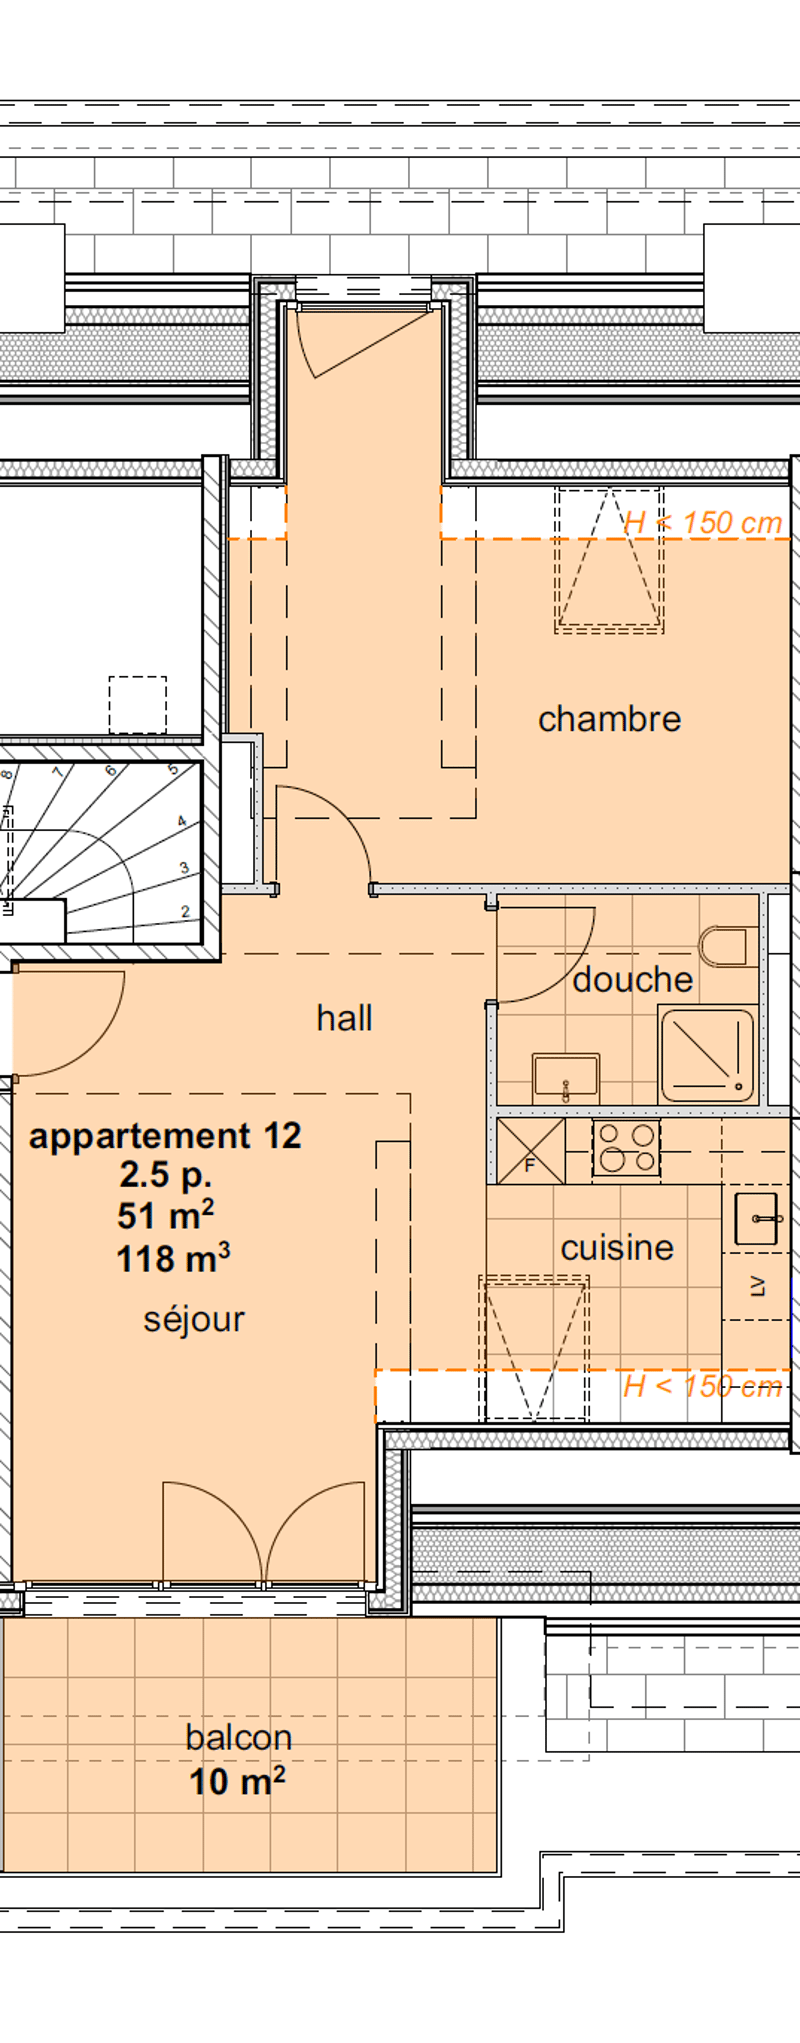 Appartements neufs de 3.5 pièces aux combles (3ème étage) - (centre) (2)